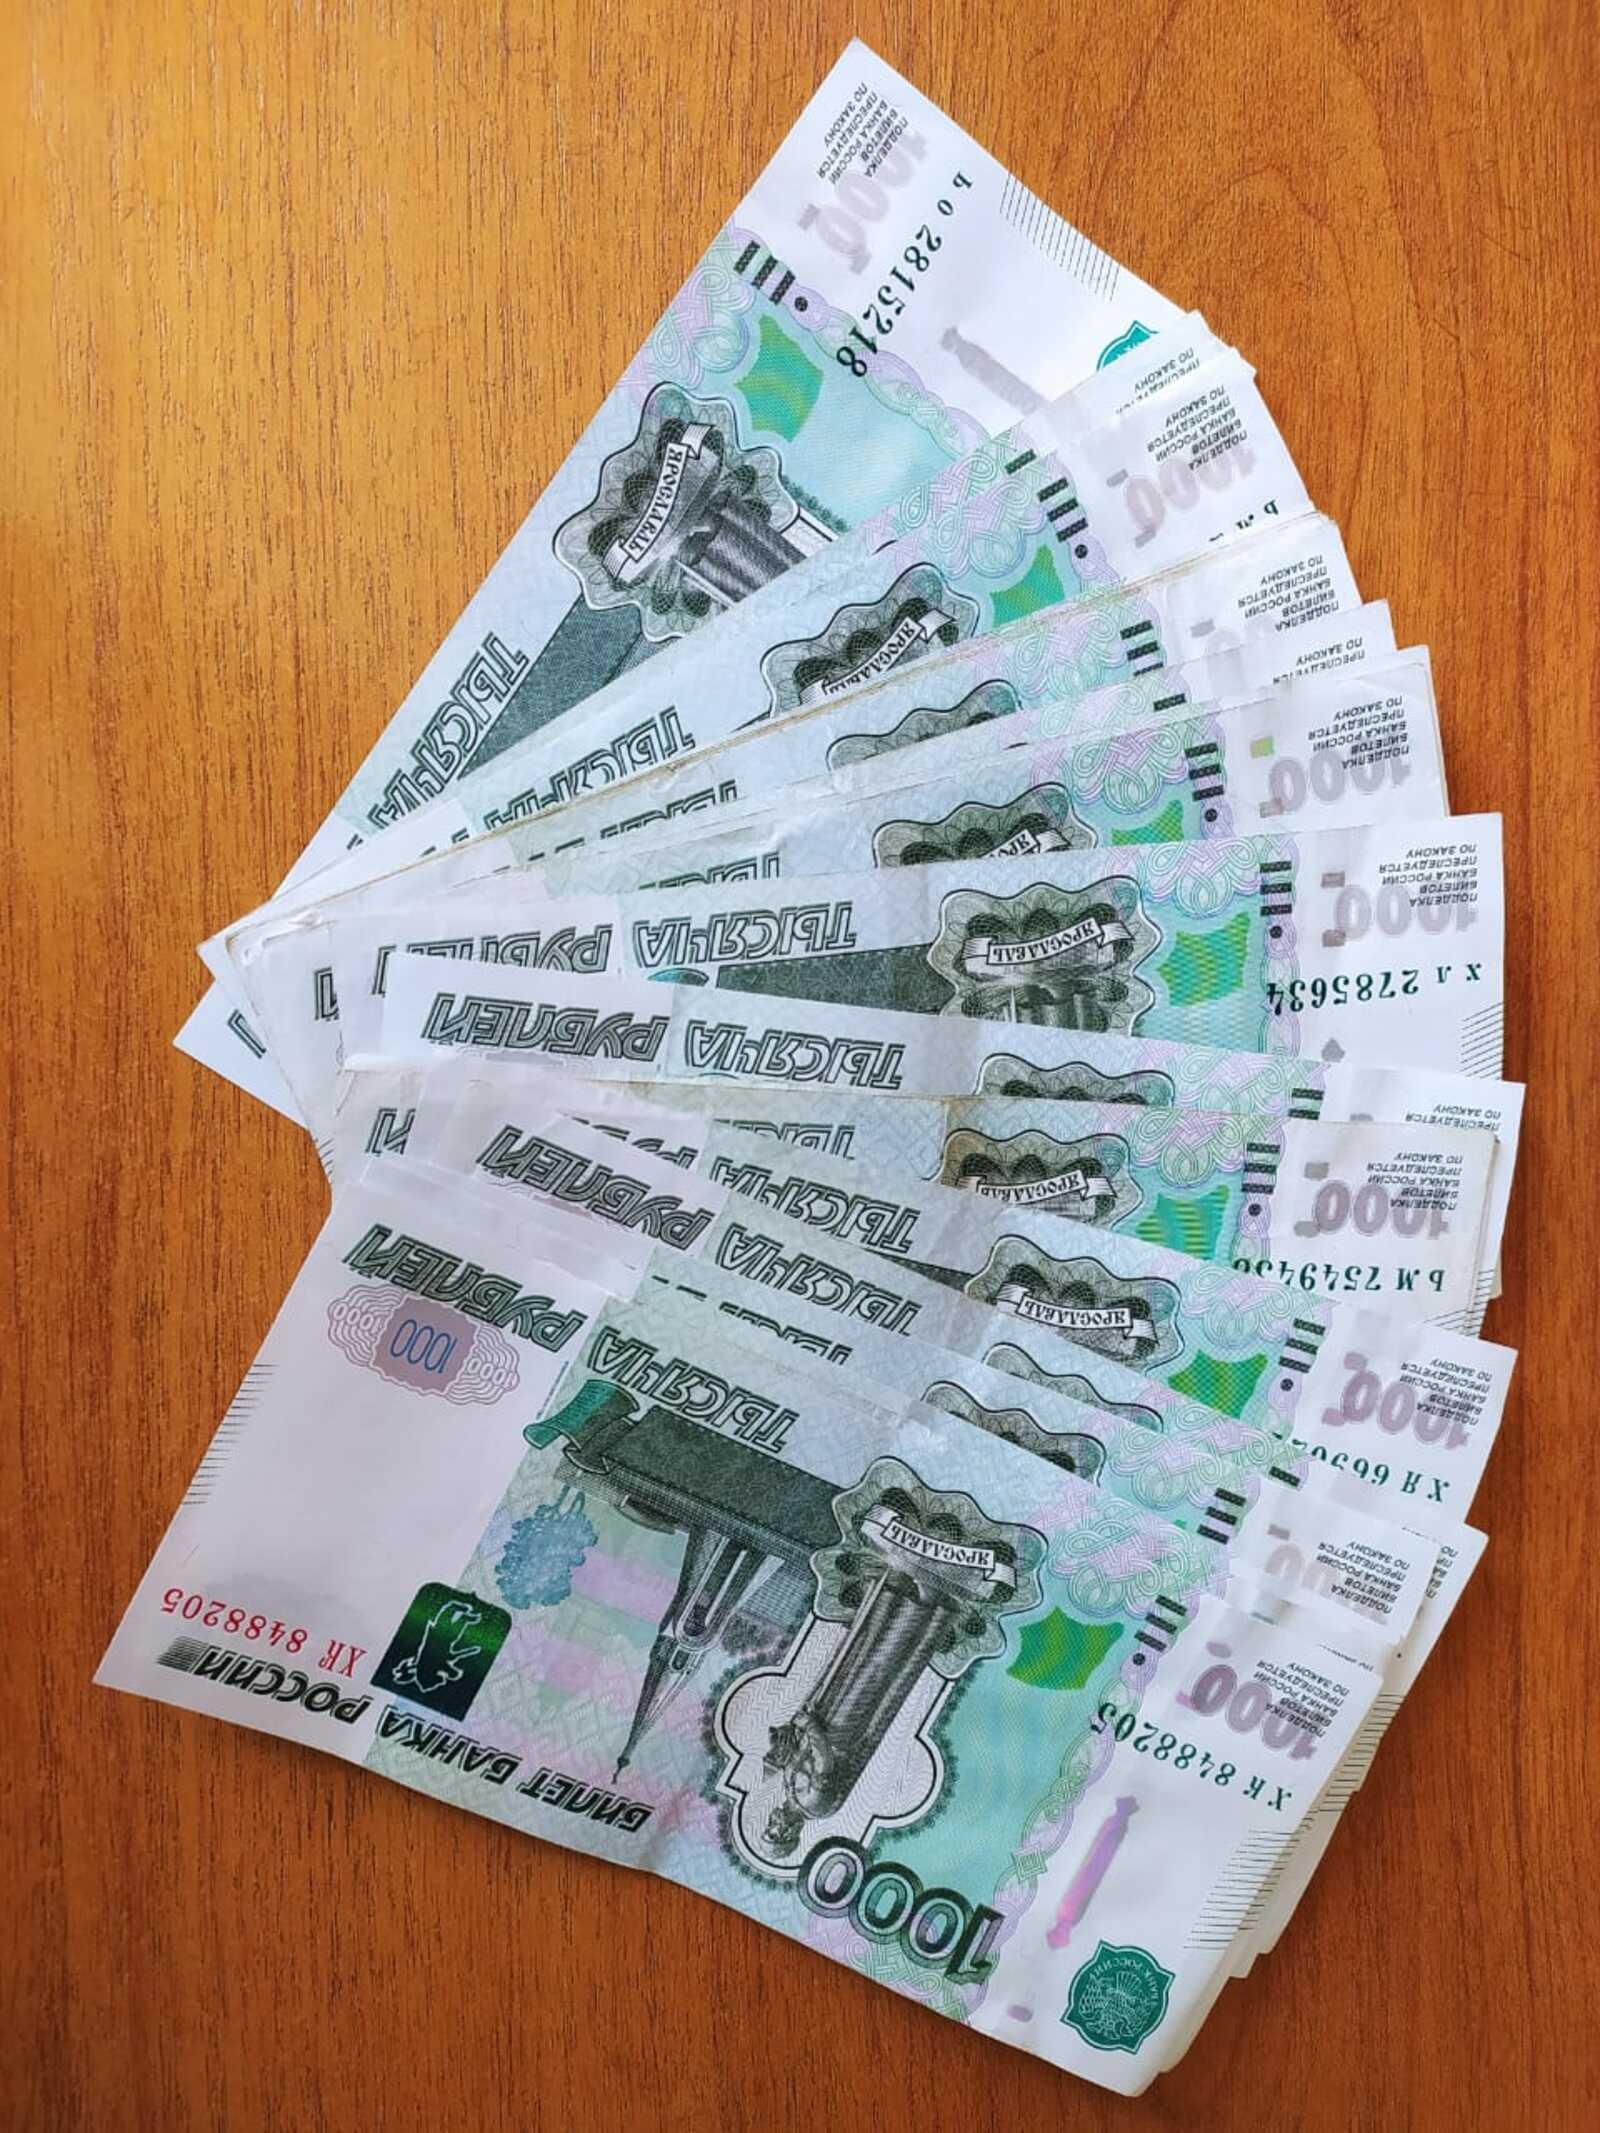 Родителям школьников предложили выплачивать по 20 тысяч рублей